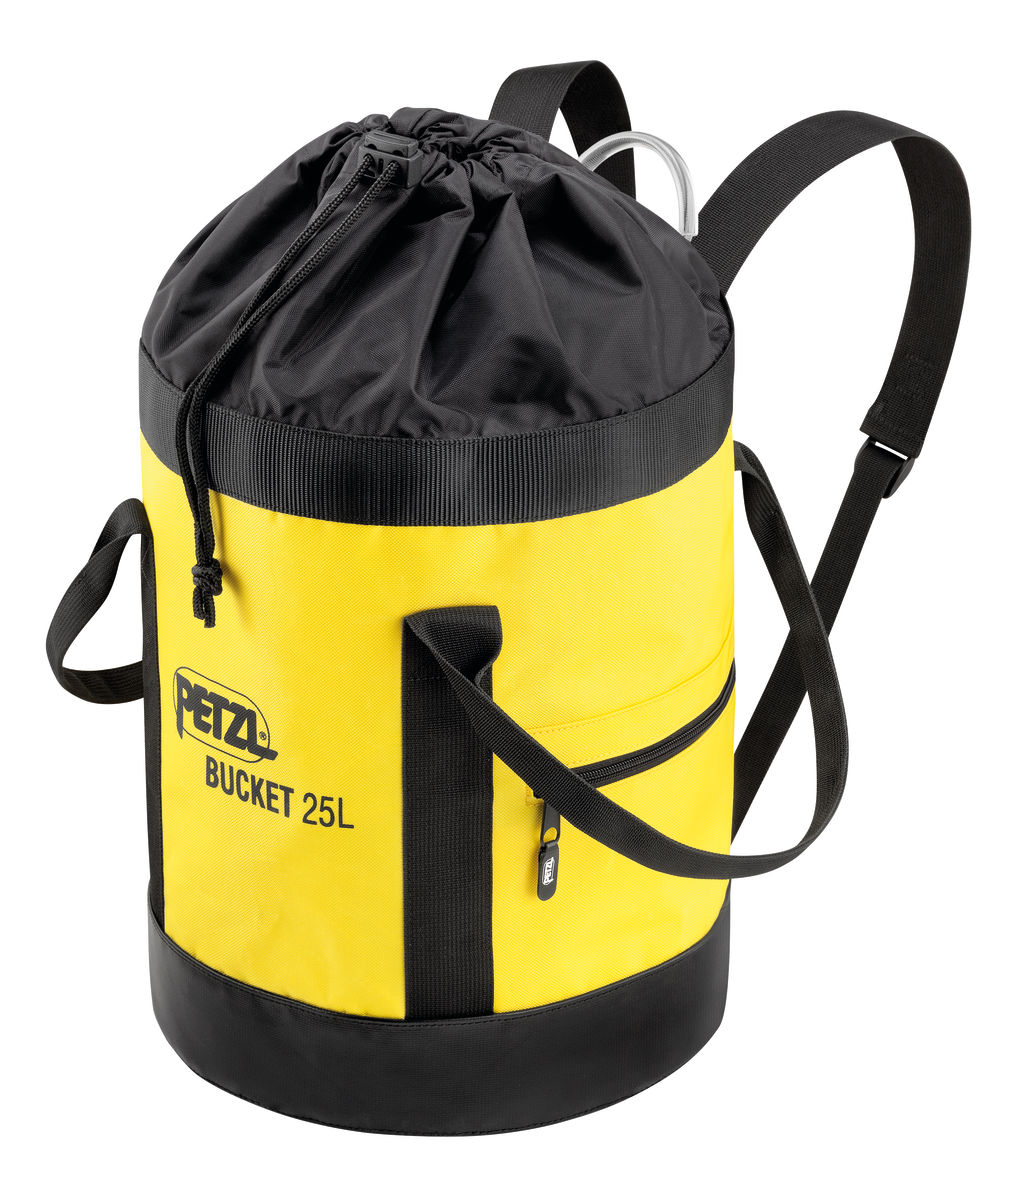 Petzl - Transportsack Bucket